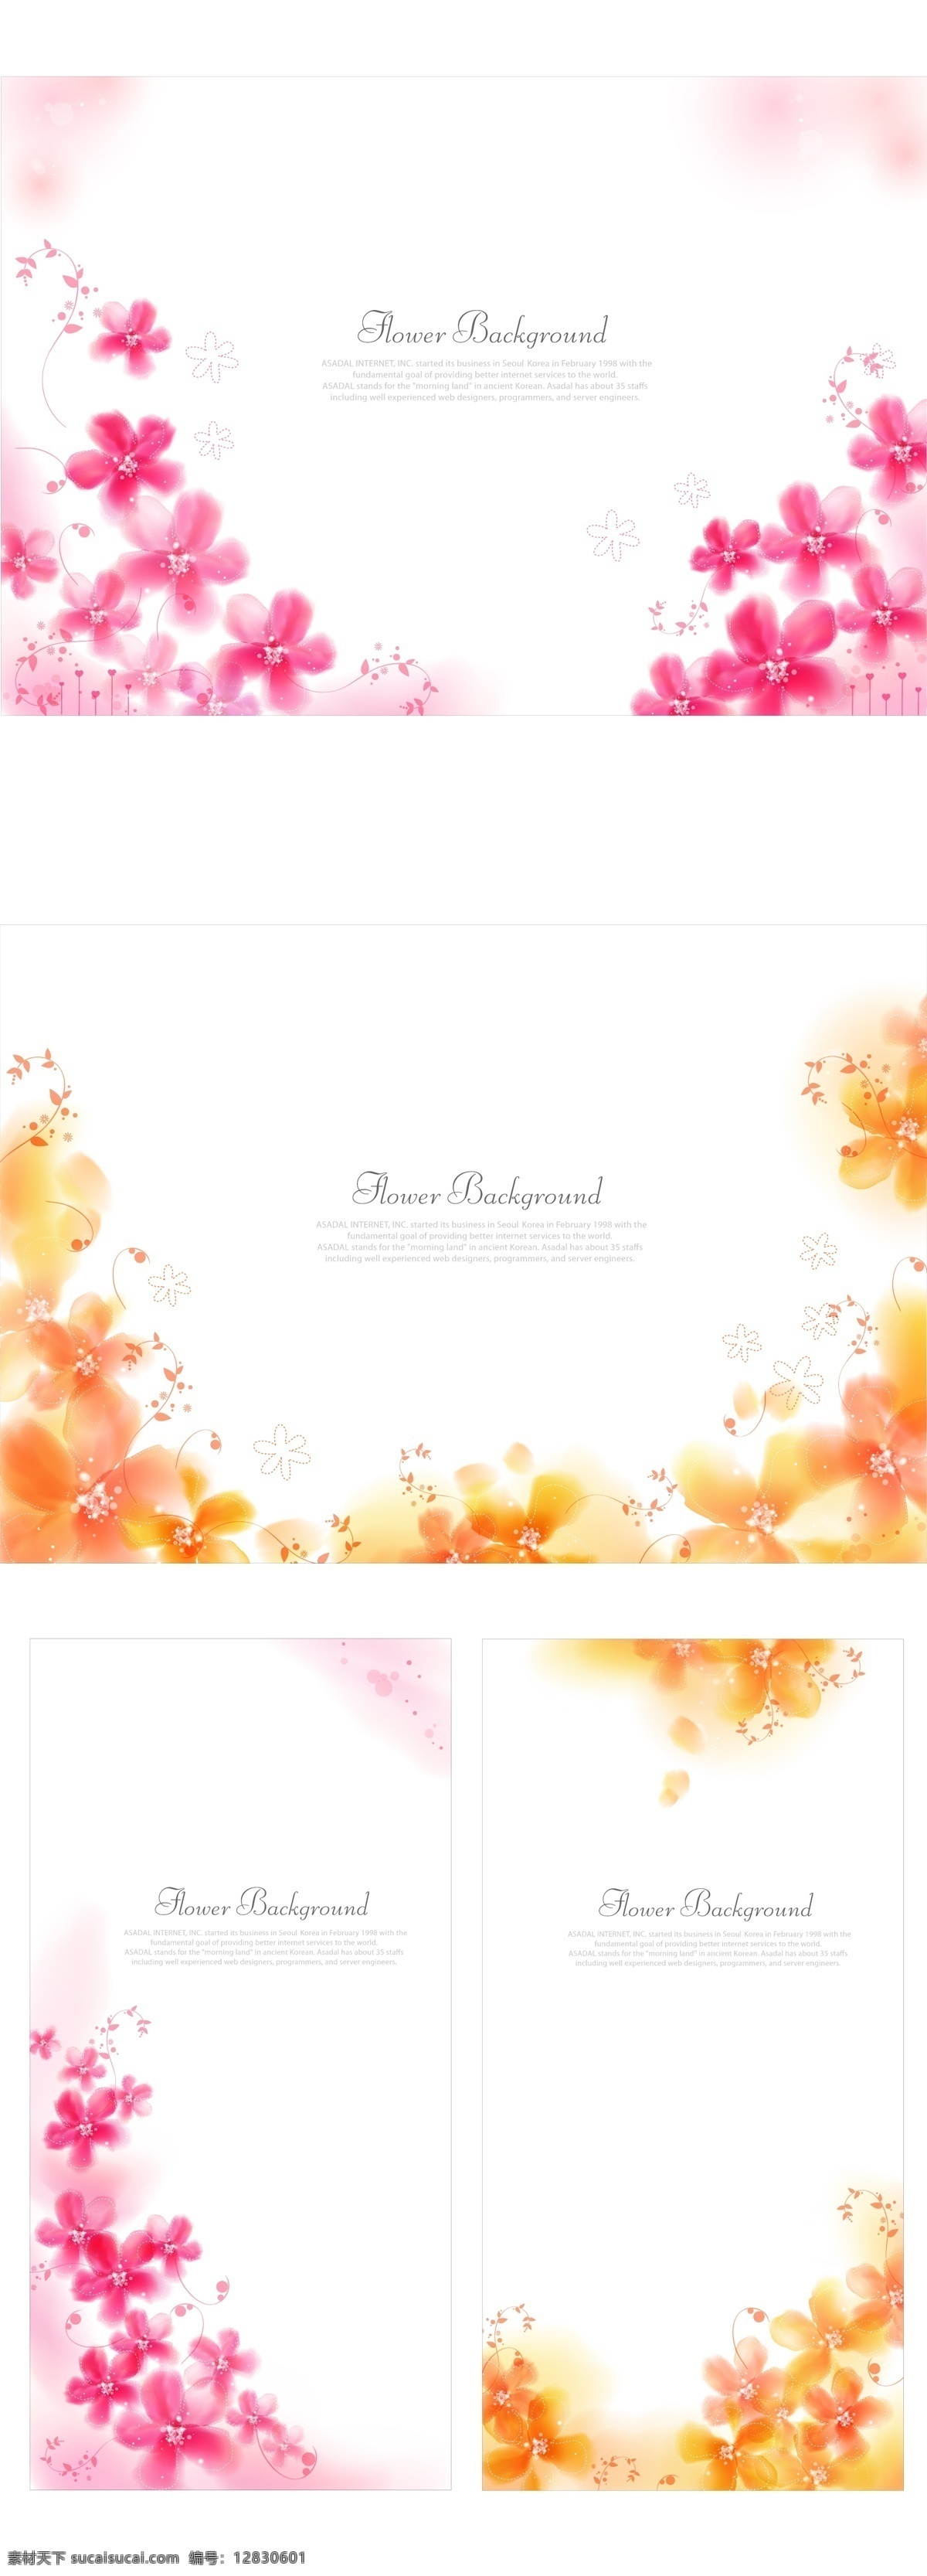 精致 卡片 横幅 模板 背景壁纸 花卉和漩涡 饰品装饰 婚礼